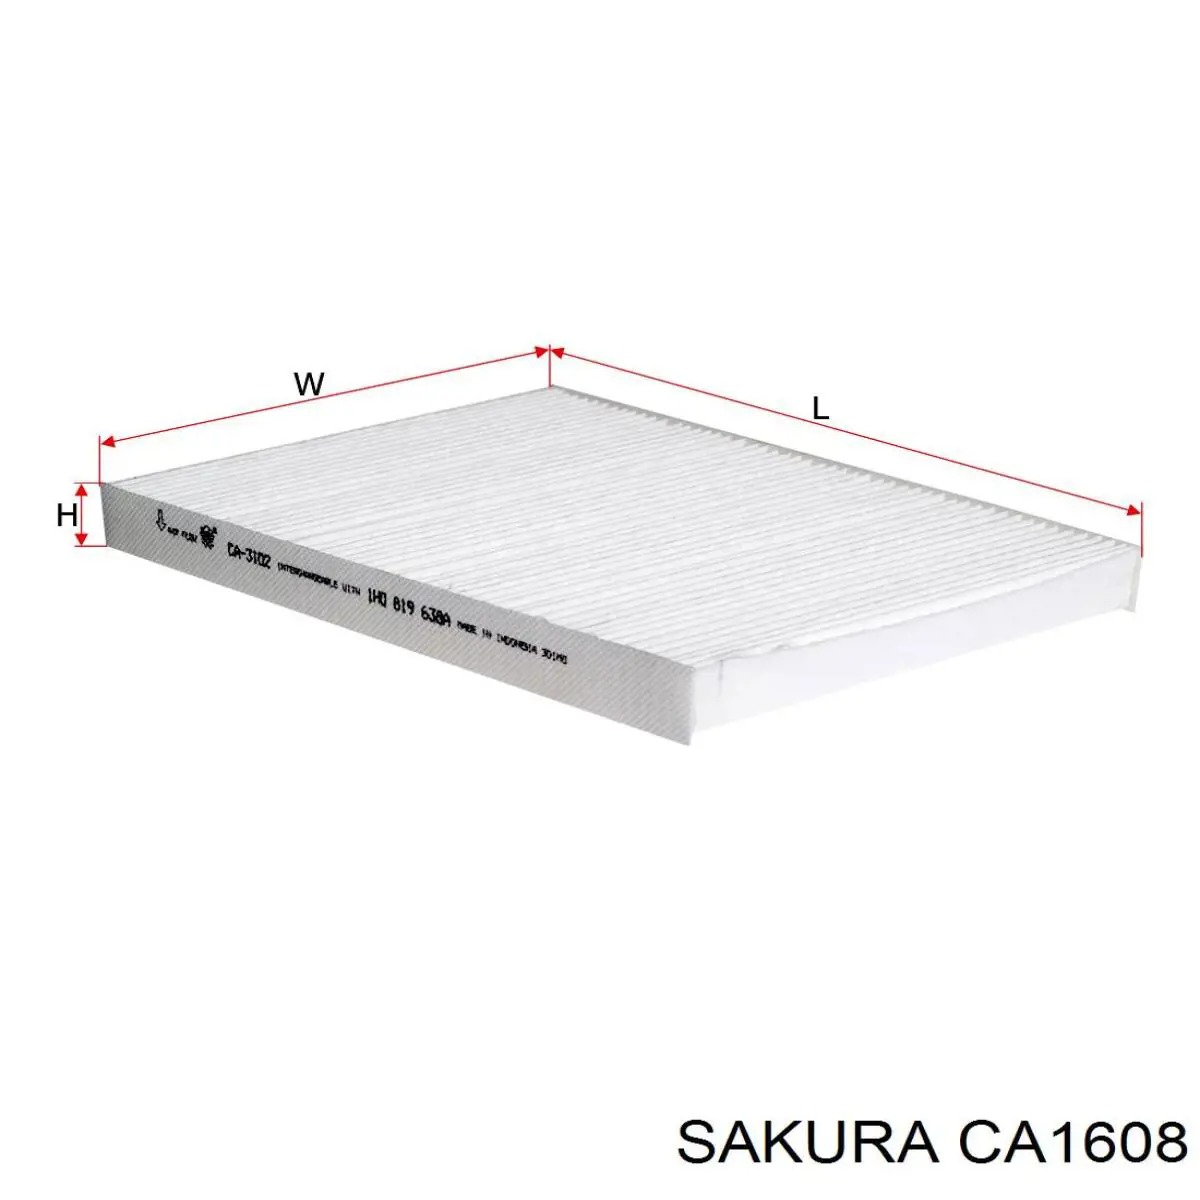 CA1608 Sakura filtro habitáculo